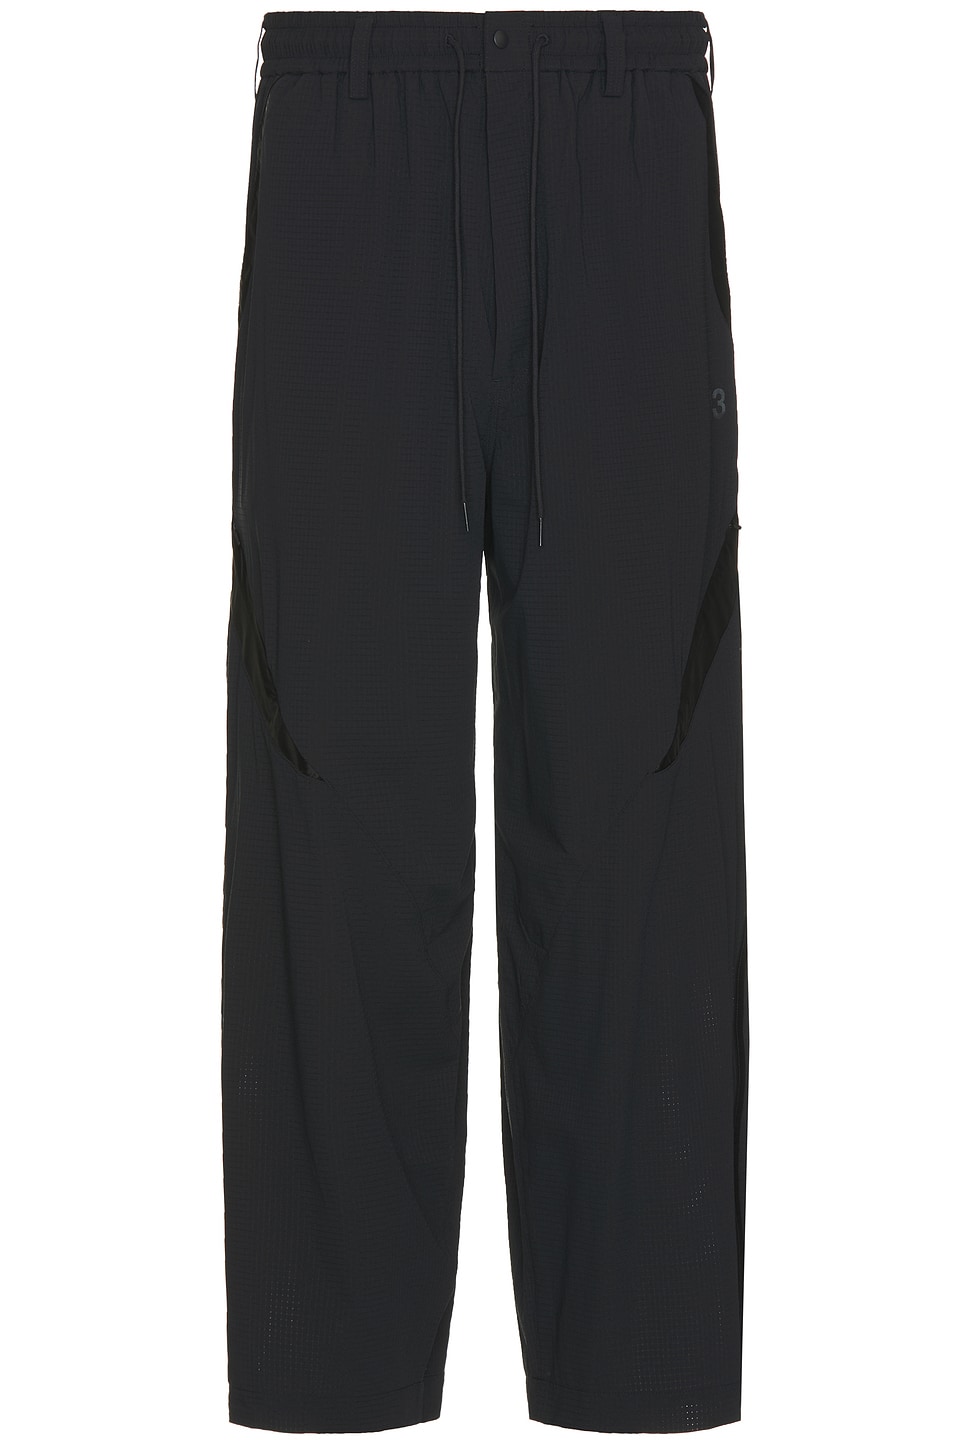 Image 1 of Y-3 Yohji Yamamoto Nyl Pants in Black